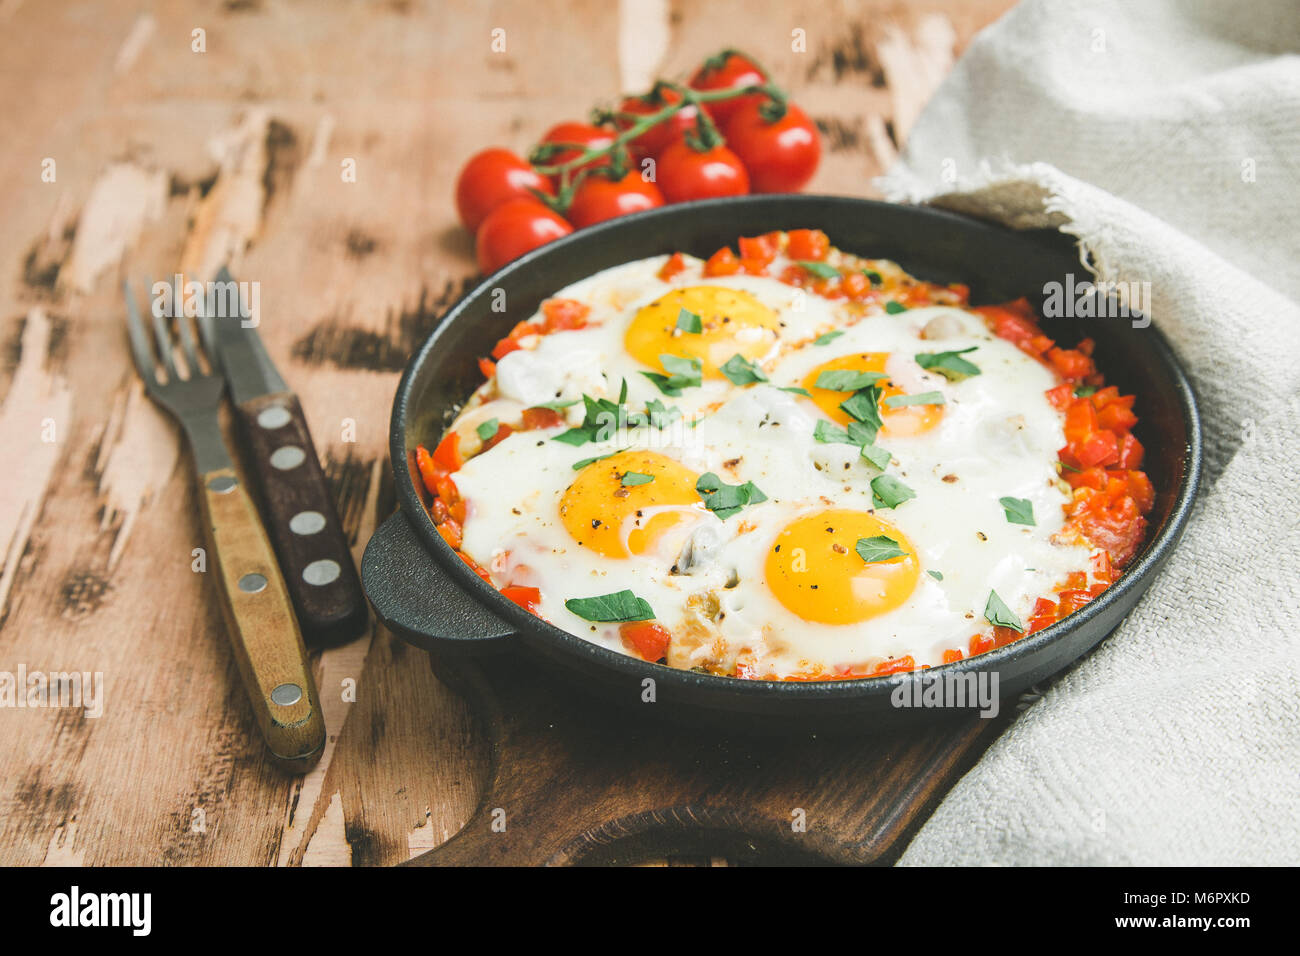 Shakshuka sains et savoureux dans une poêle. Oeufs au plat avec tomates, poivrons, légumes et fines herbes. Plat traditionnel du Moyen-Orient Banque D'Images